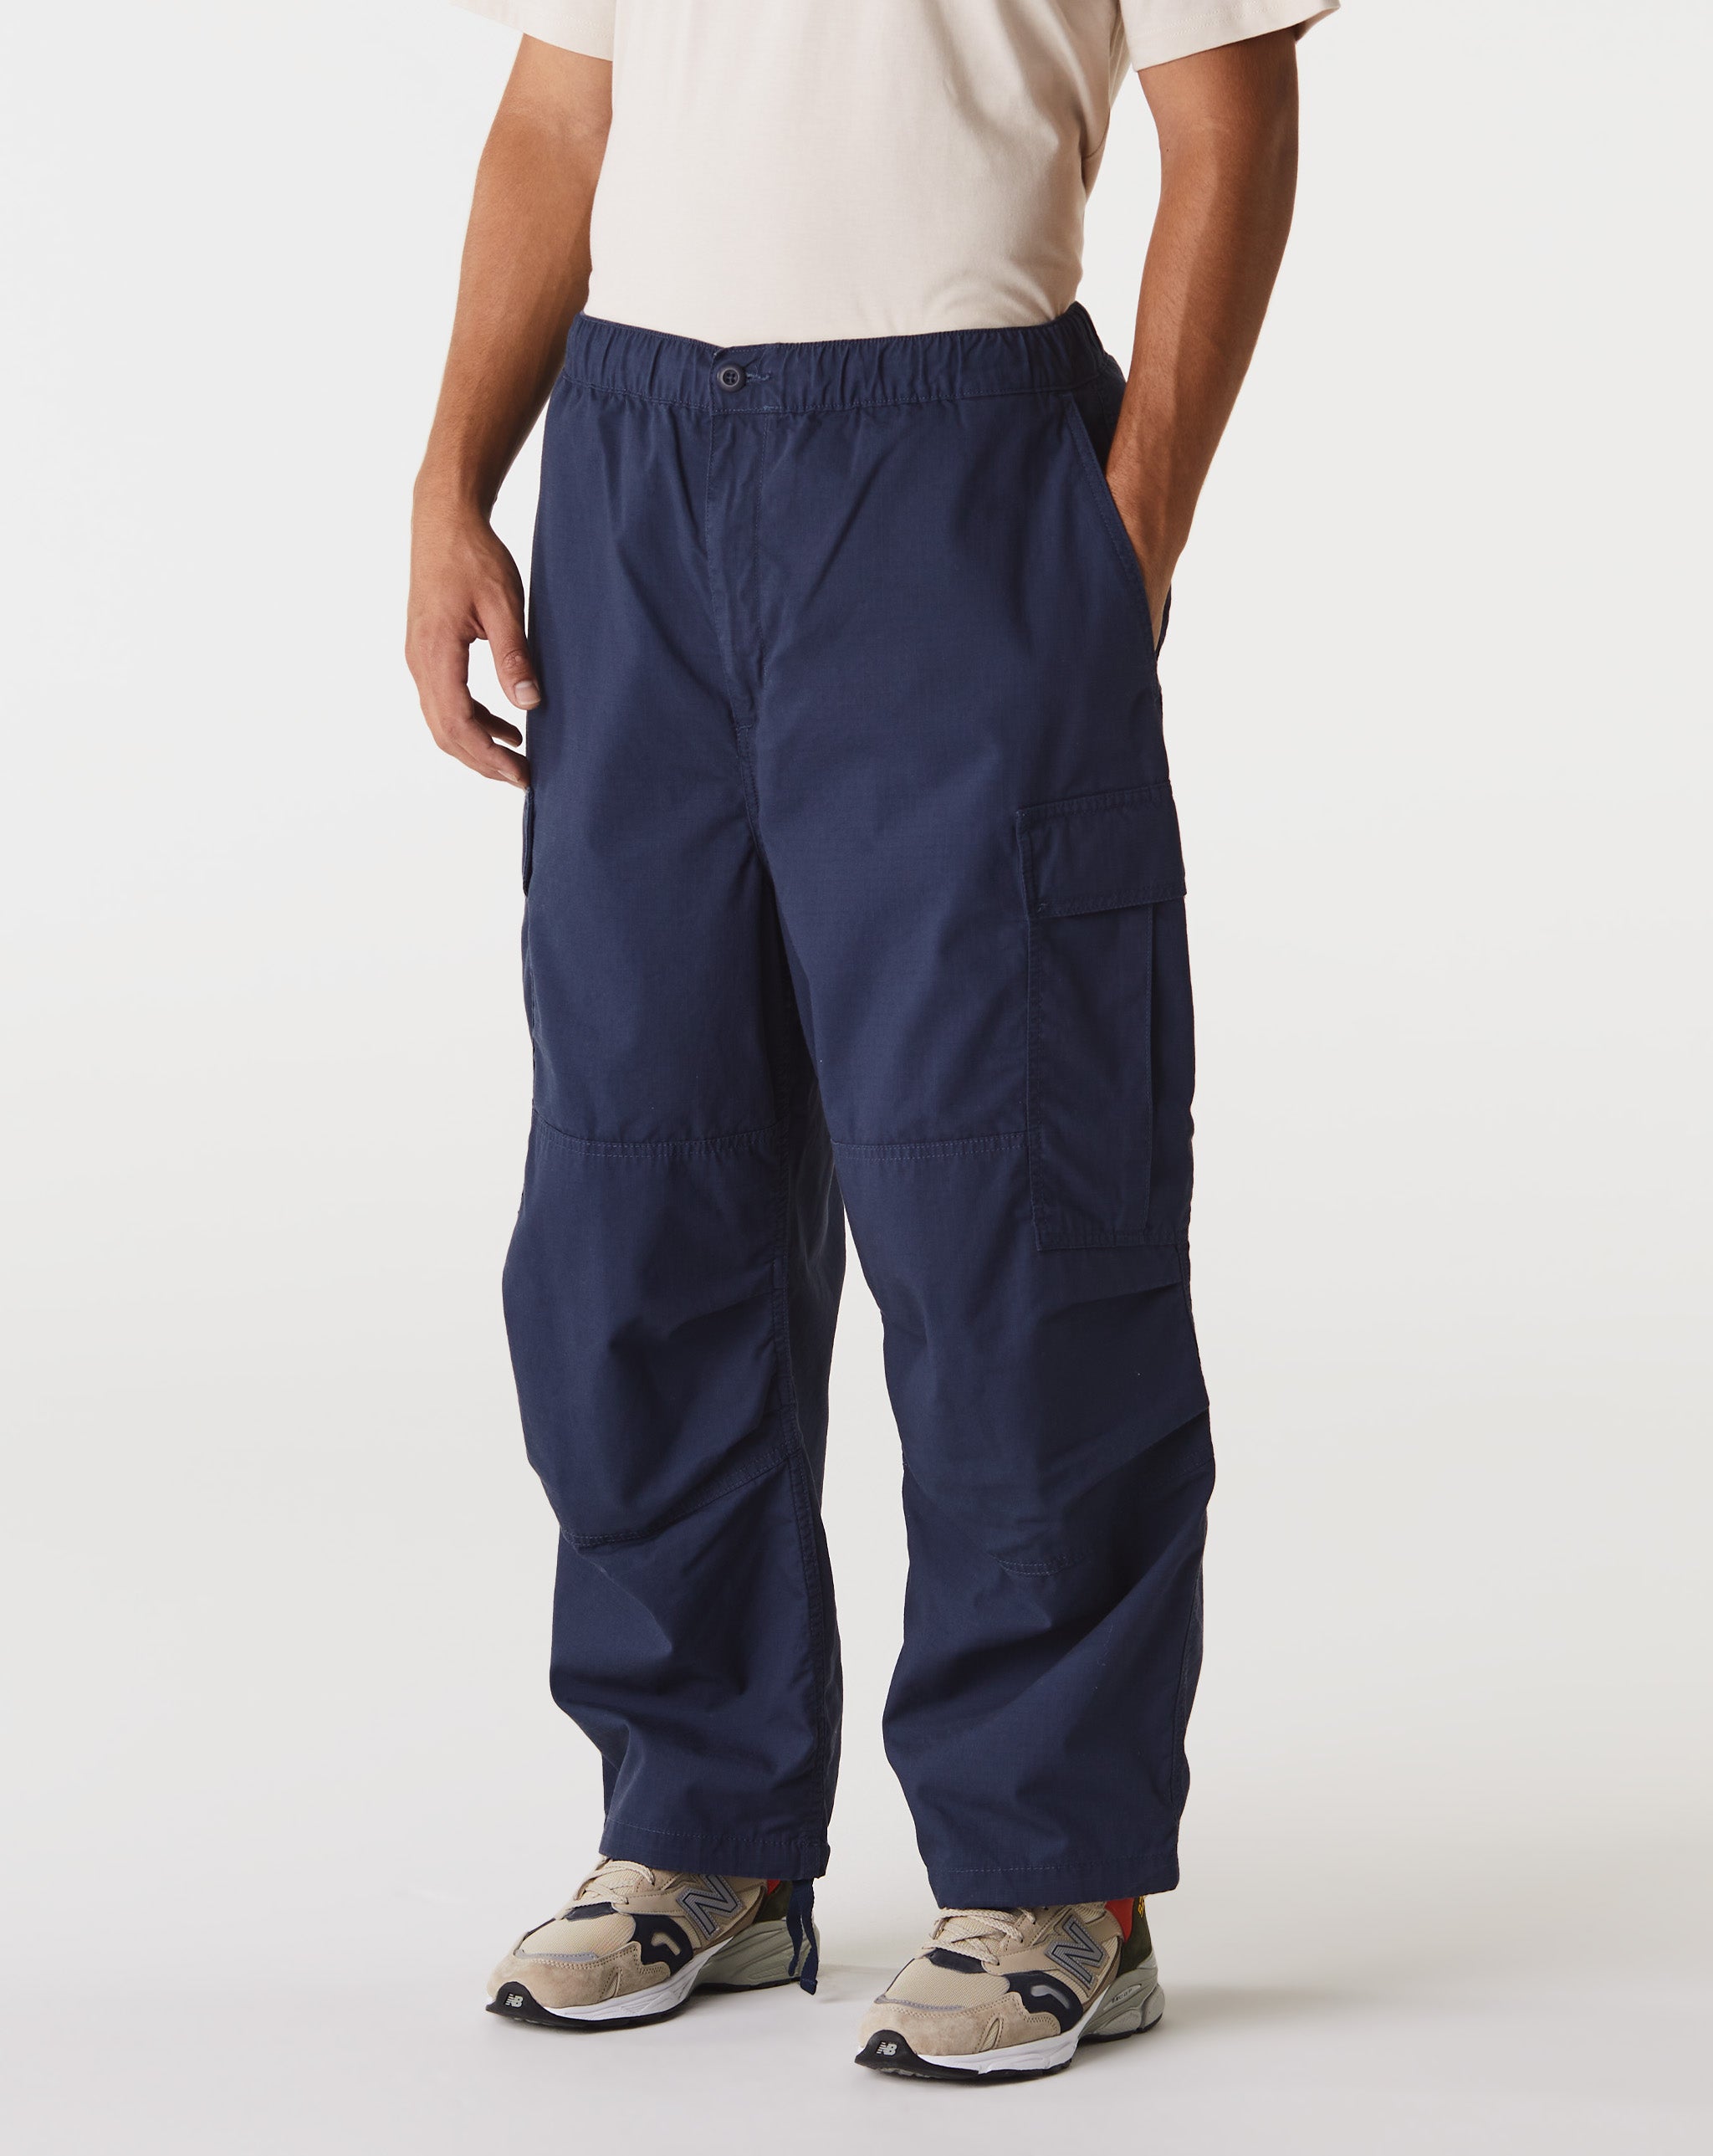 Carhartt WIP Floral Cami Top And Frill Shorts Pyjama Set  - Cheap Urlfreeze Jordan outlet